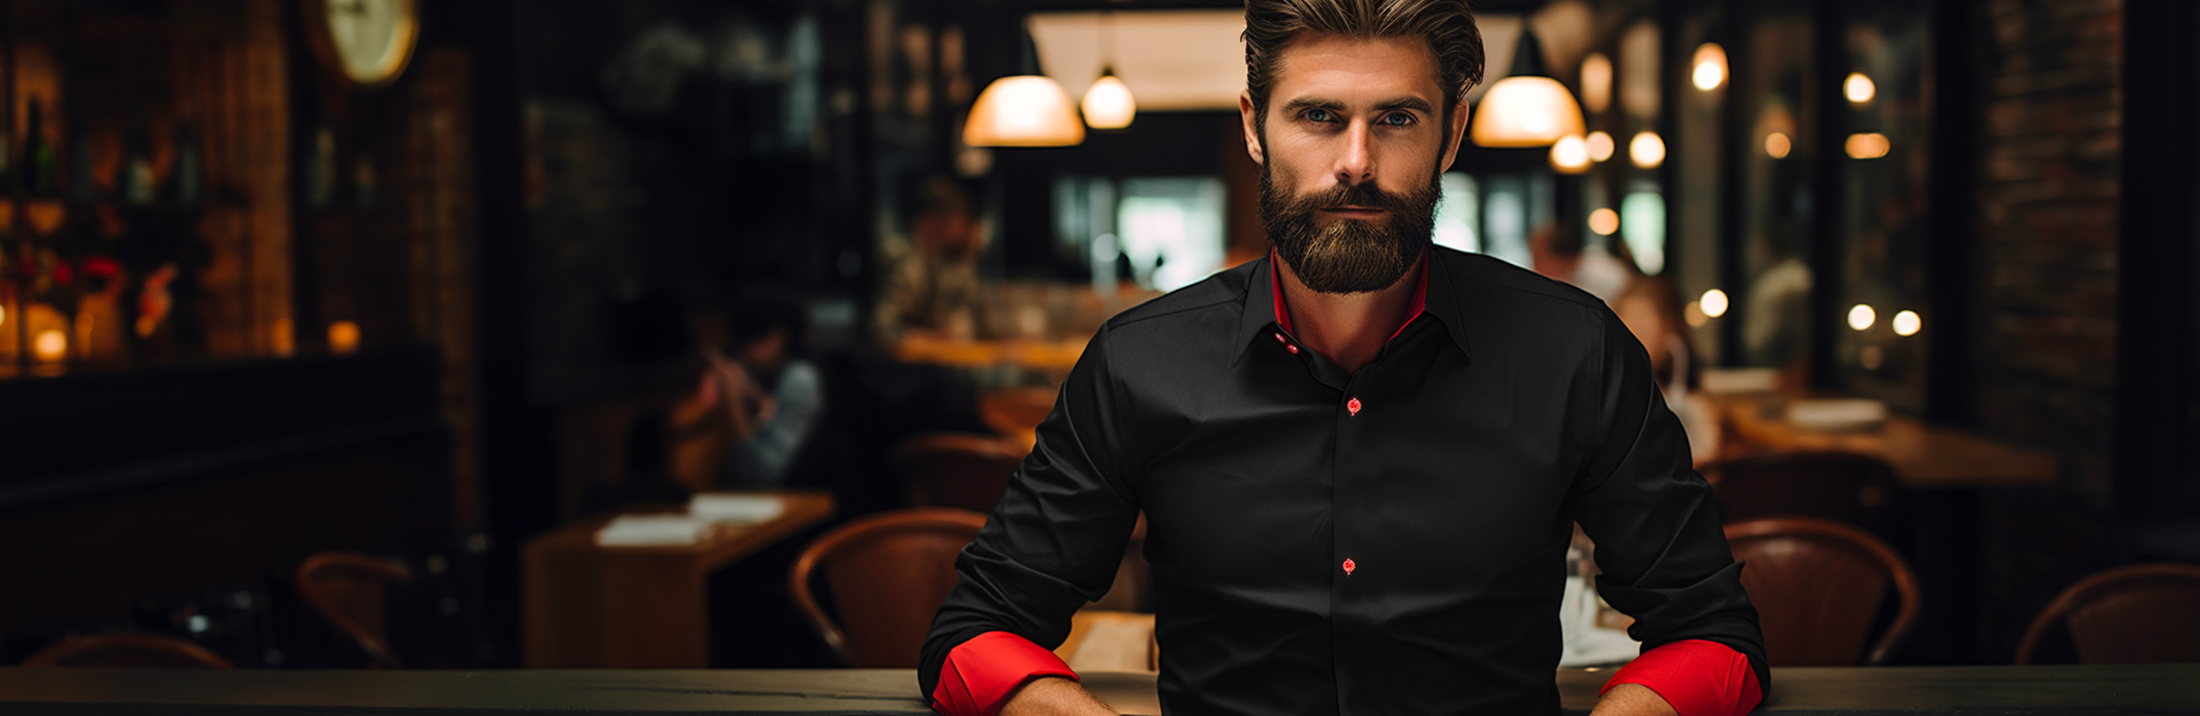 Mies istuu ravintolassa pukeutuneena mustapunaiseen kauluspaitaan